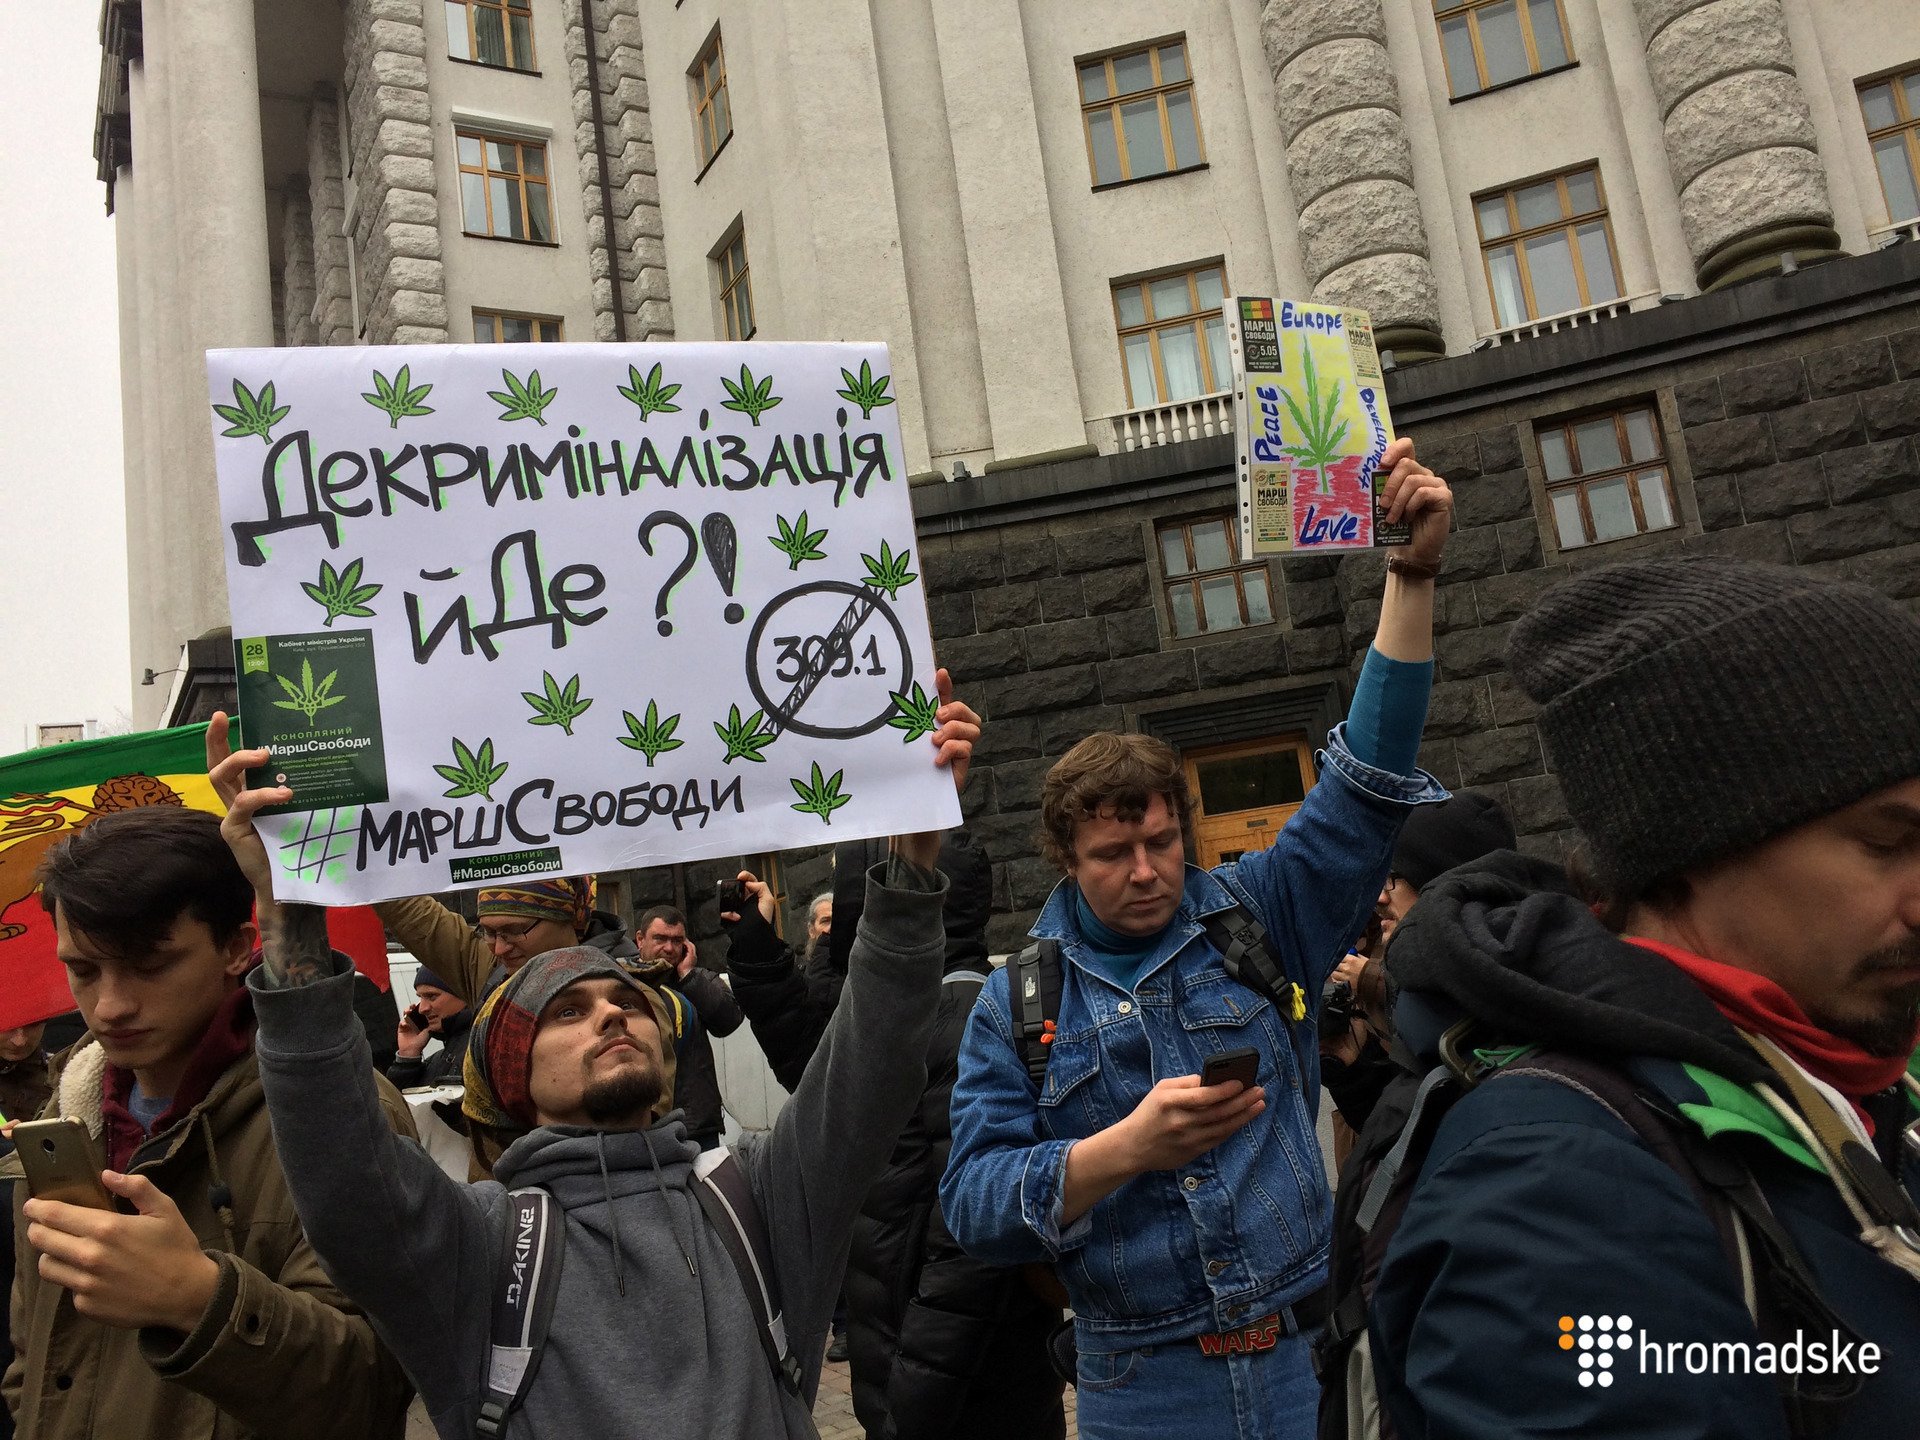 В Киеве возле здания Кабмина устроили акцию "Марш свободы" с требованием декриминализации незначительных правонарушений в сфере оборота наркотиков и урегулирования доступа к медицинской марихуаны. 